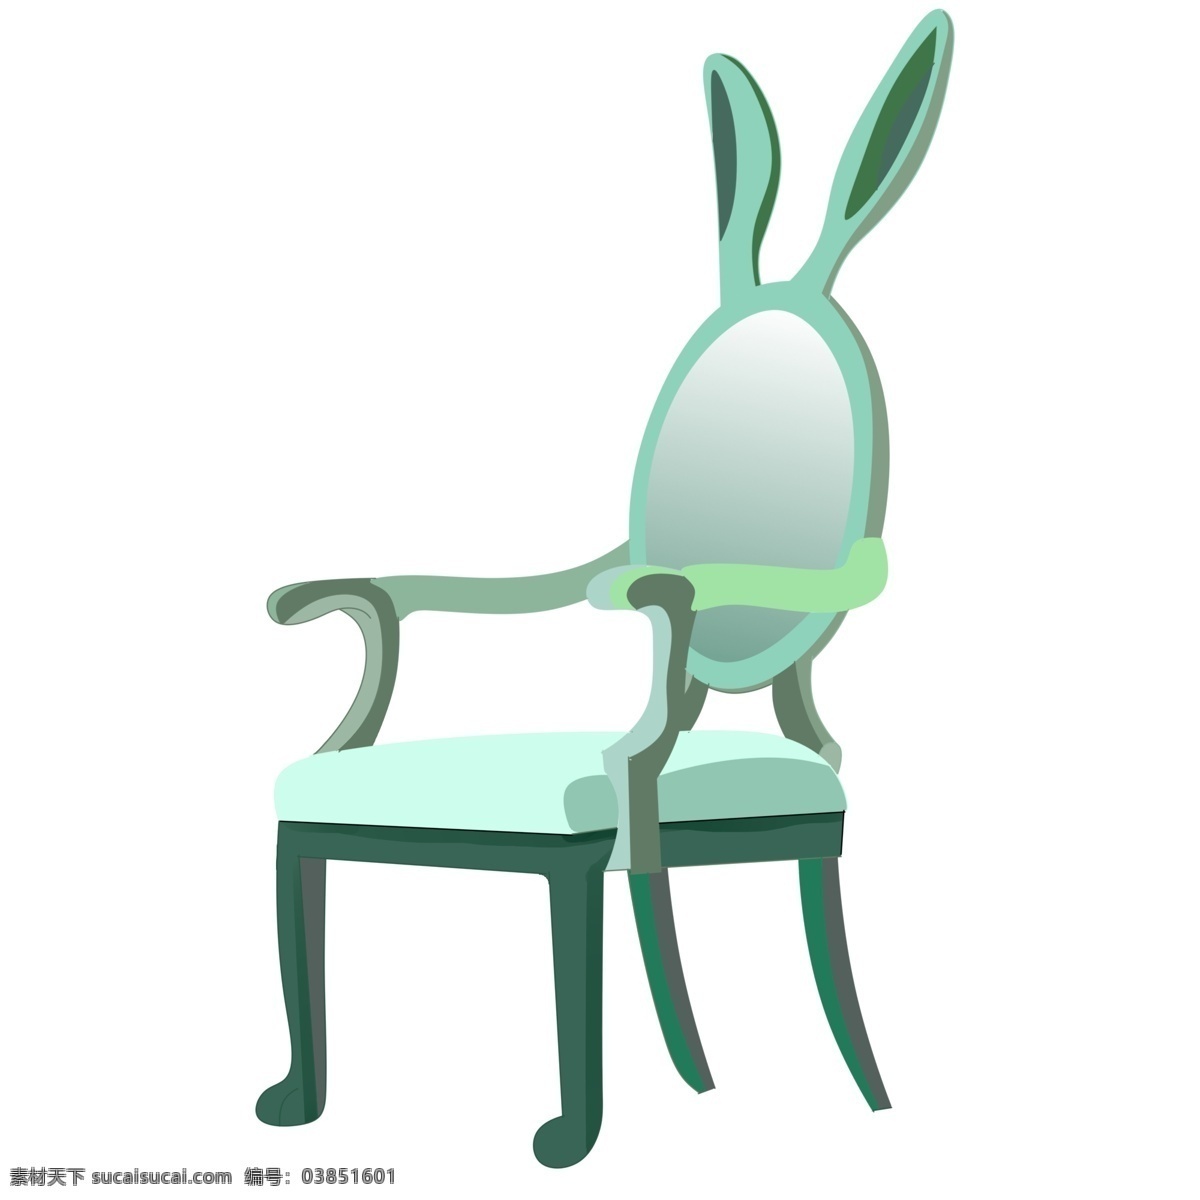 绿色 卡通 座椅 插画 绿色椅子 卡通椅子插画 家具 家具插画 椅子 桌椅插画 创意椅子插画 兔耳椅背